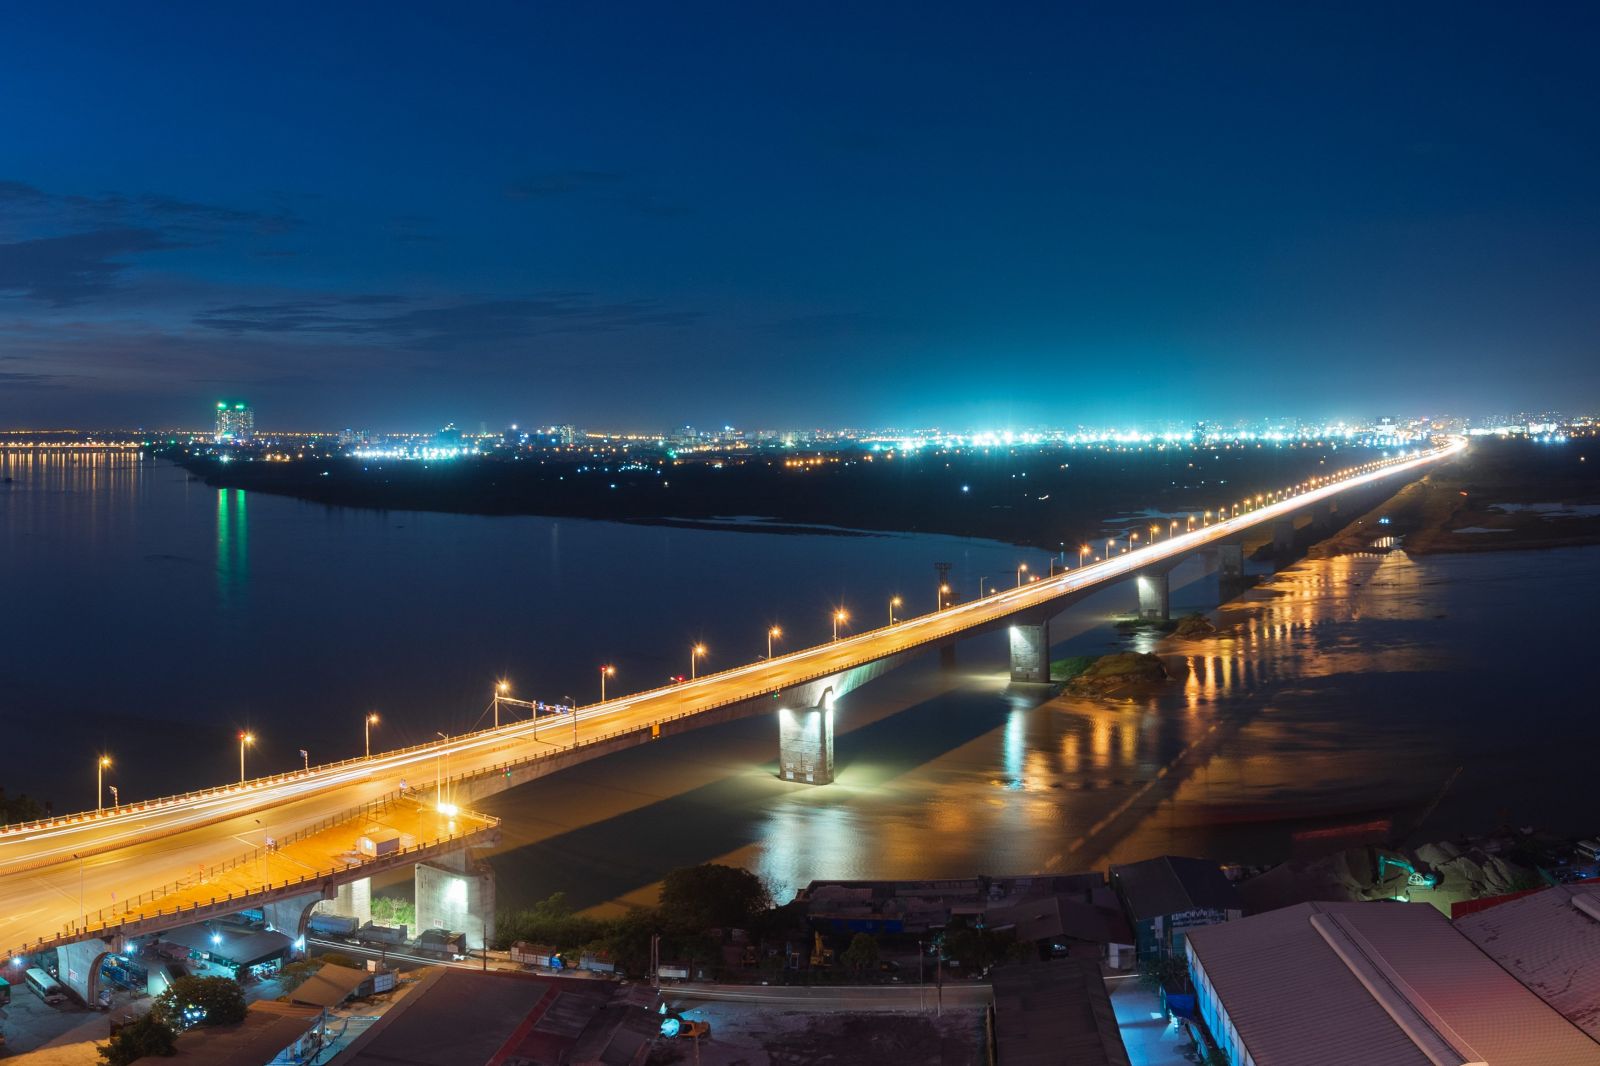 Khu vực Long Biên – Gia Lâm sẽ có tổng cộng 6 cây cầu nối với khu vực đô thị lõi Hà Nội, hứa hẹn tạo nên các phát triển đột phá ở khu Đông Thủ đô.